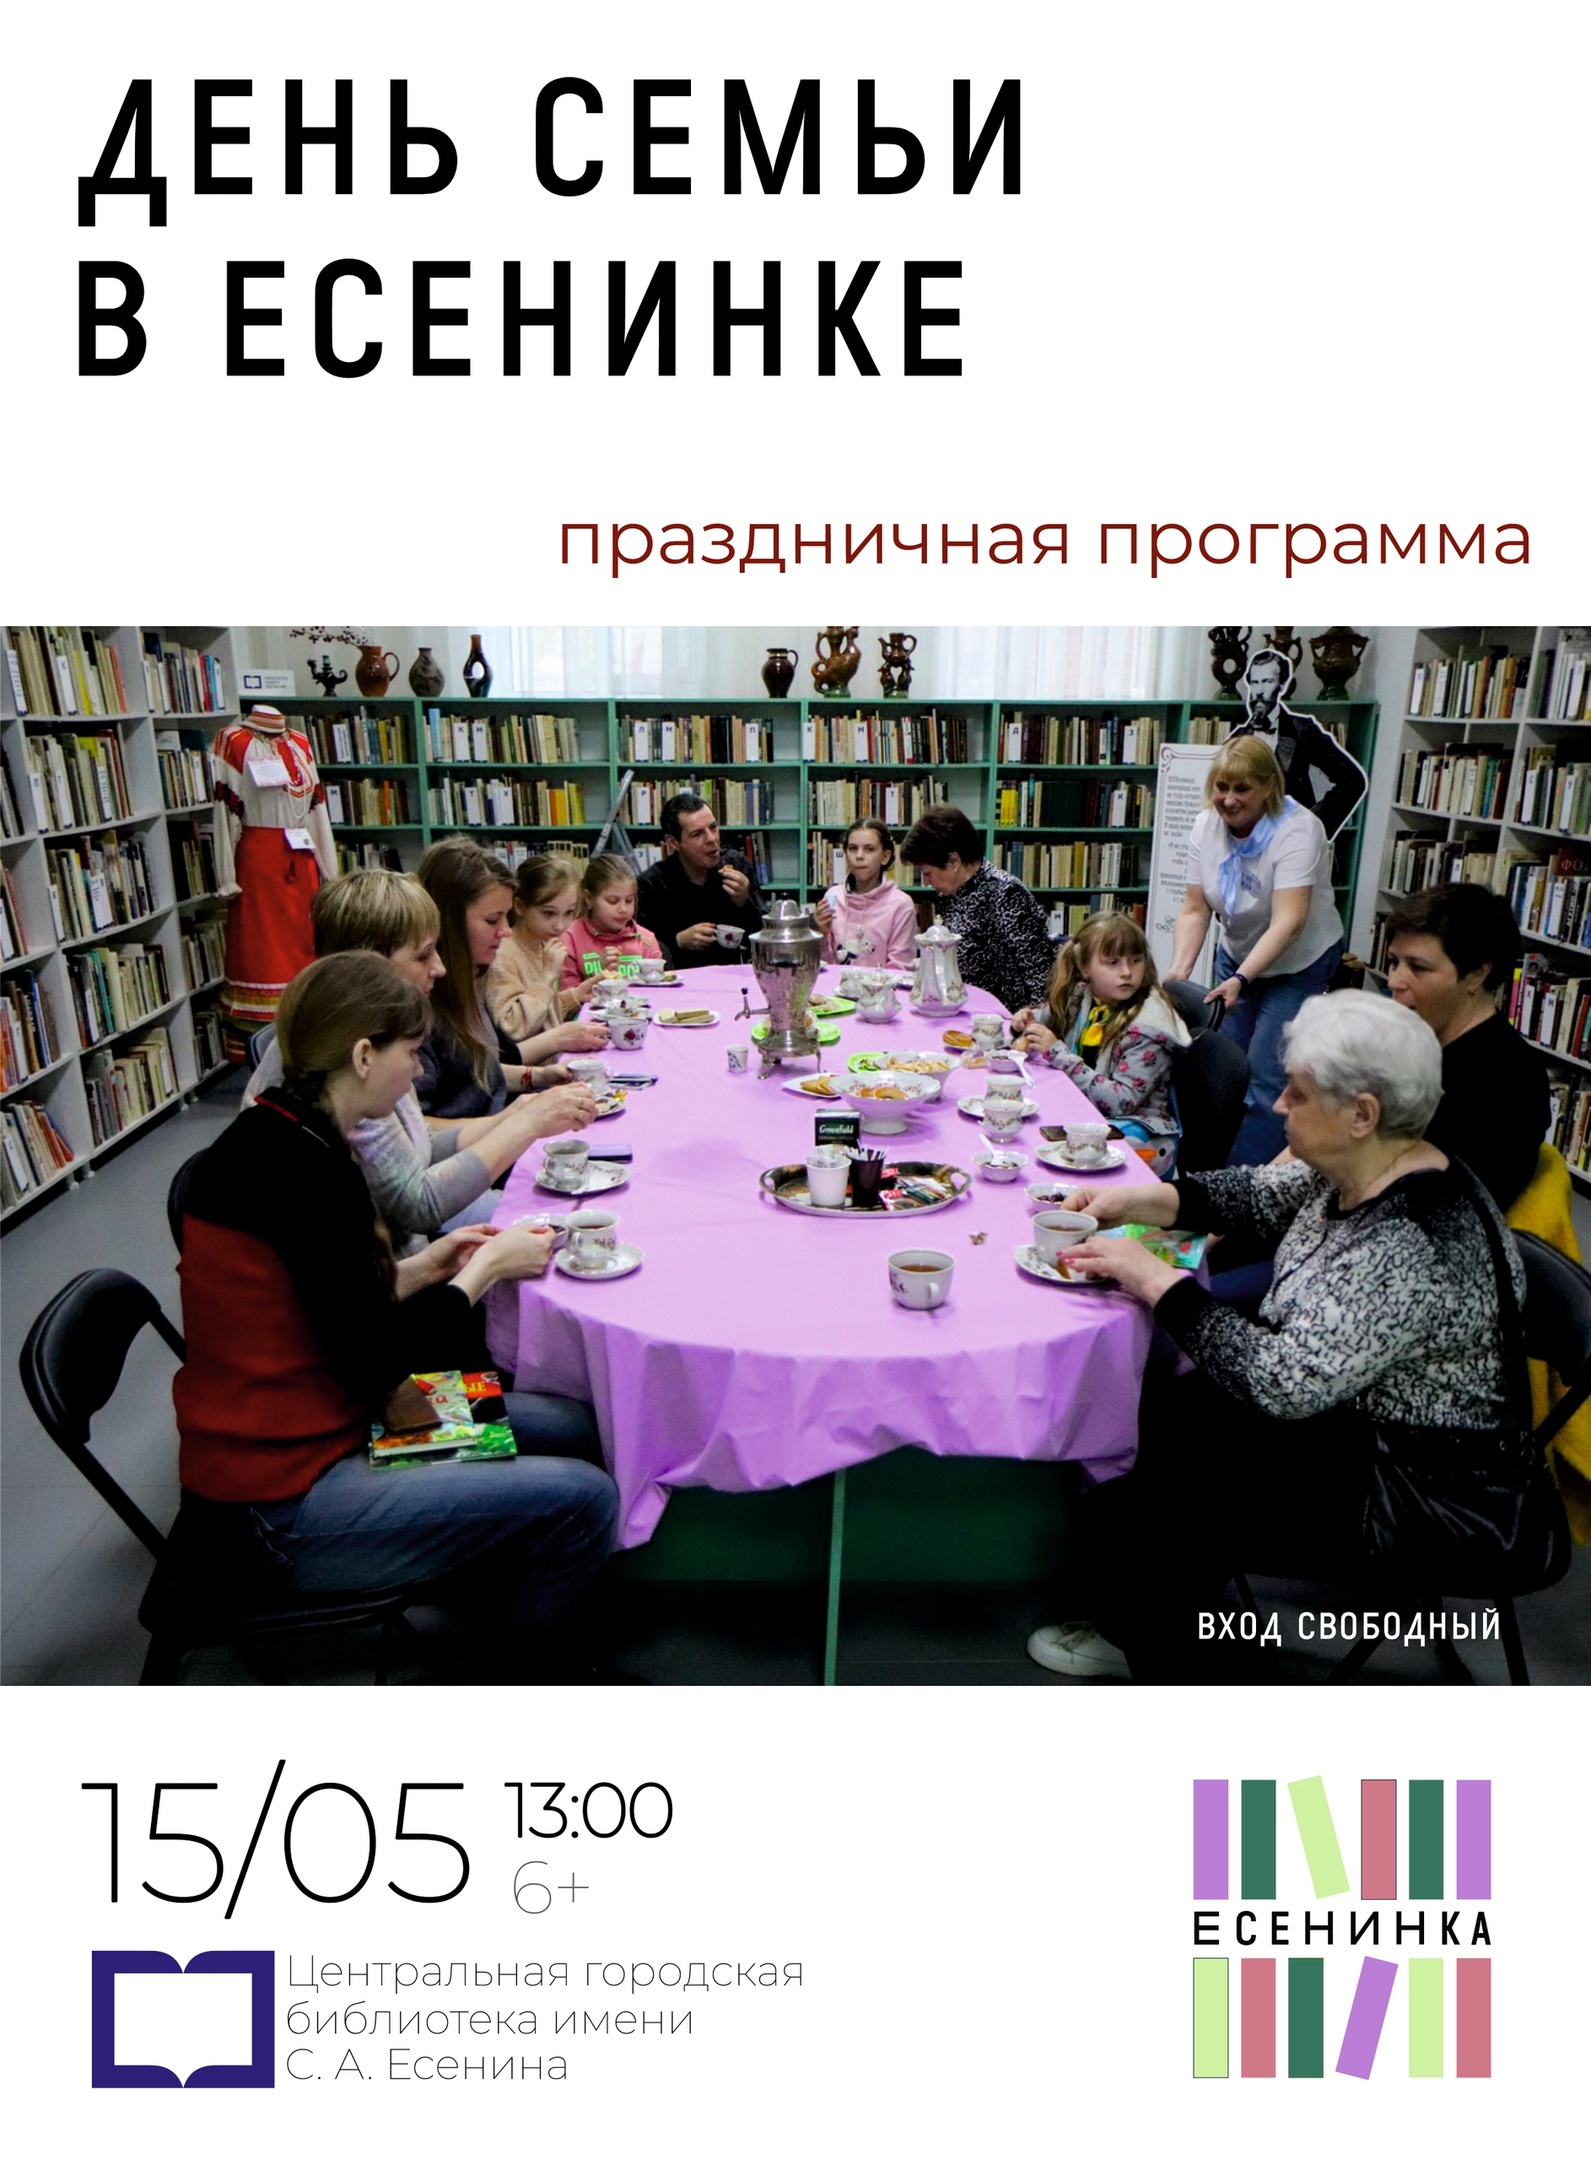 Рязанские семьи приглашают отметить «День семьи» в библиотеке